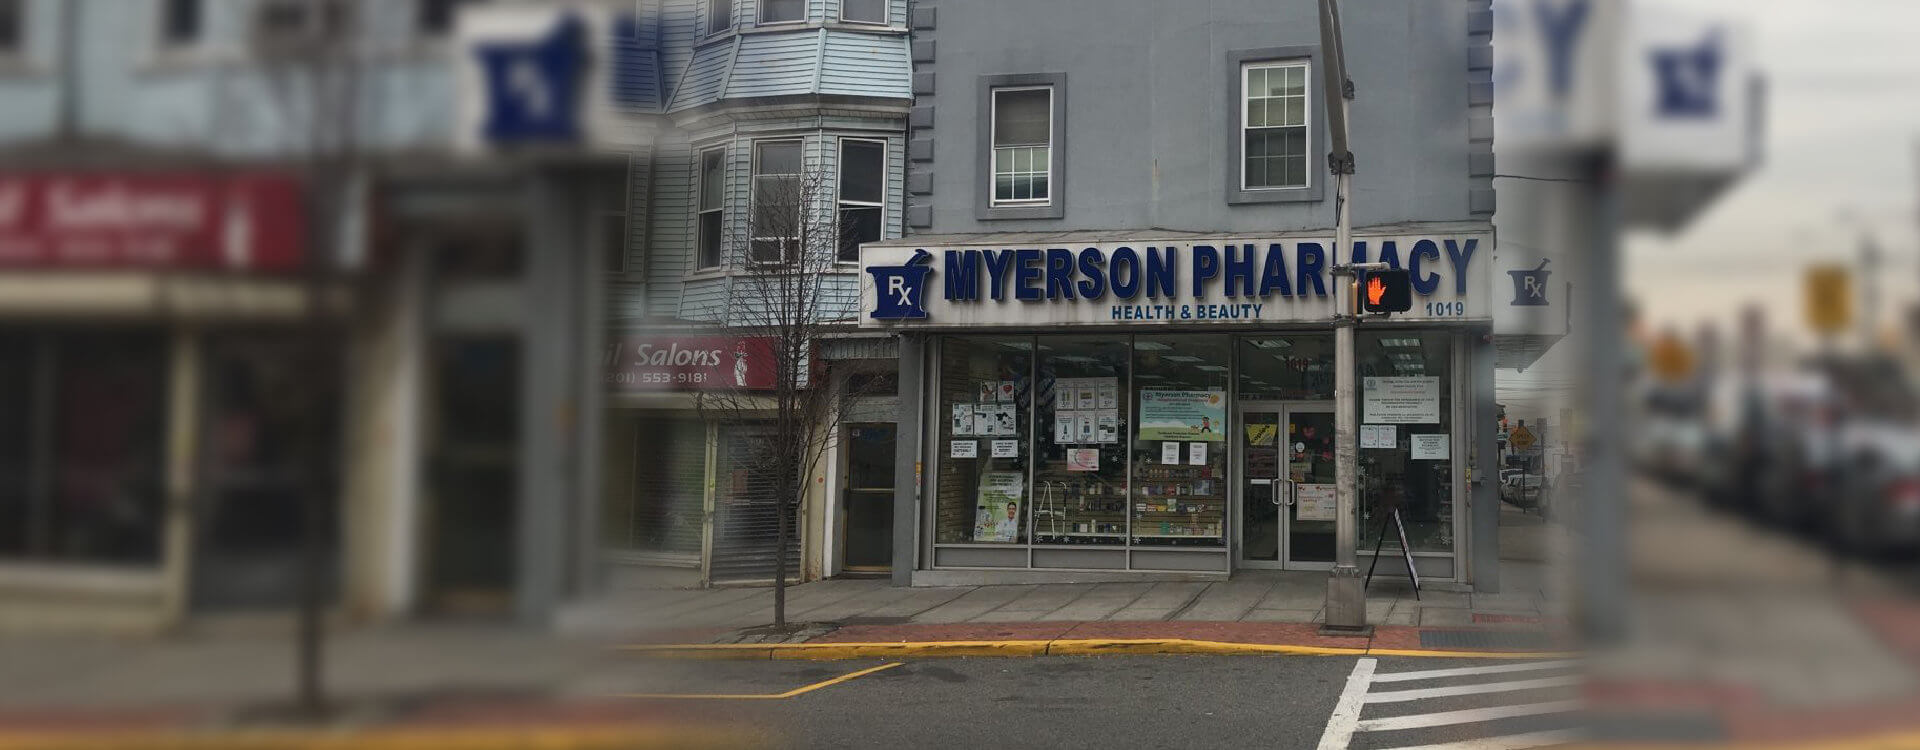 myerson pharmacy